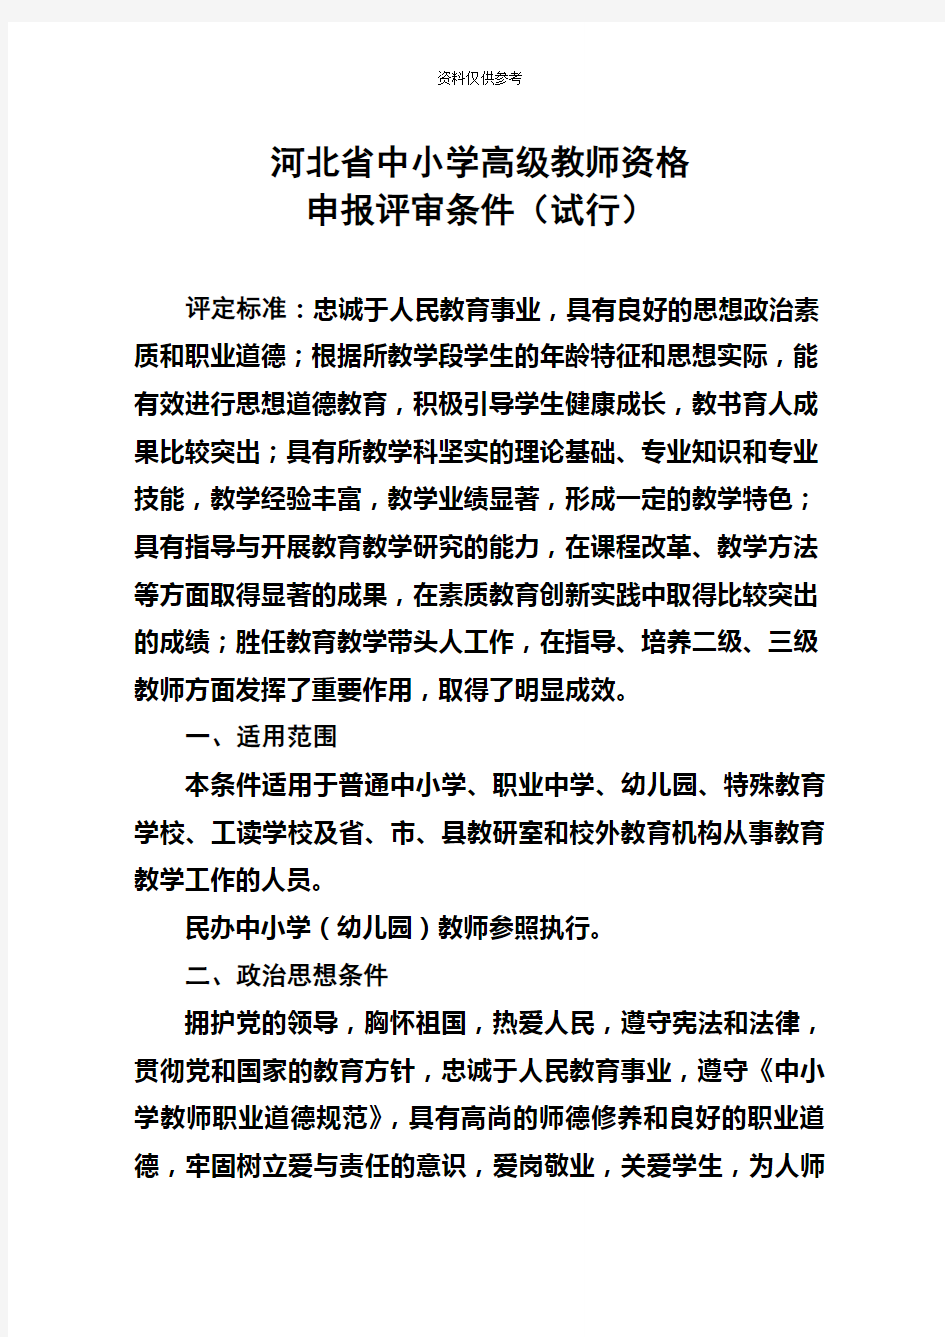 河北省中小学高级教师资格申报评审条件试行